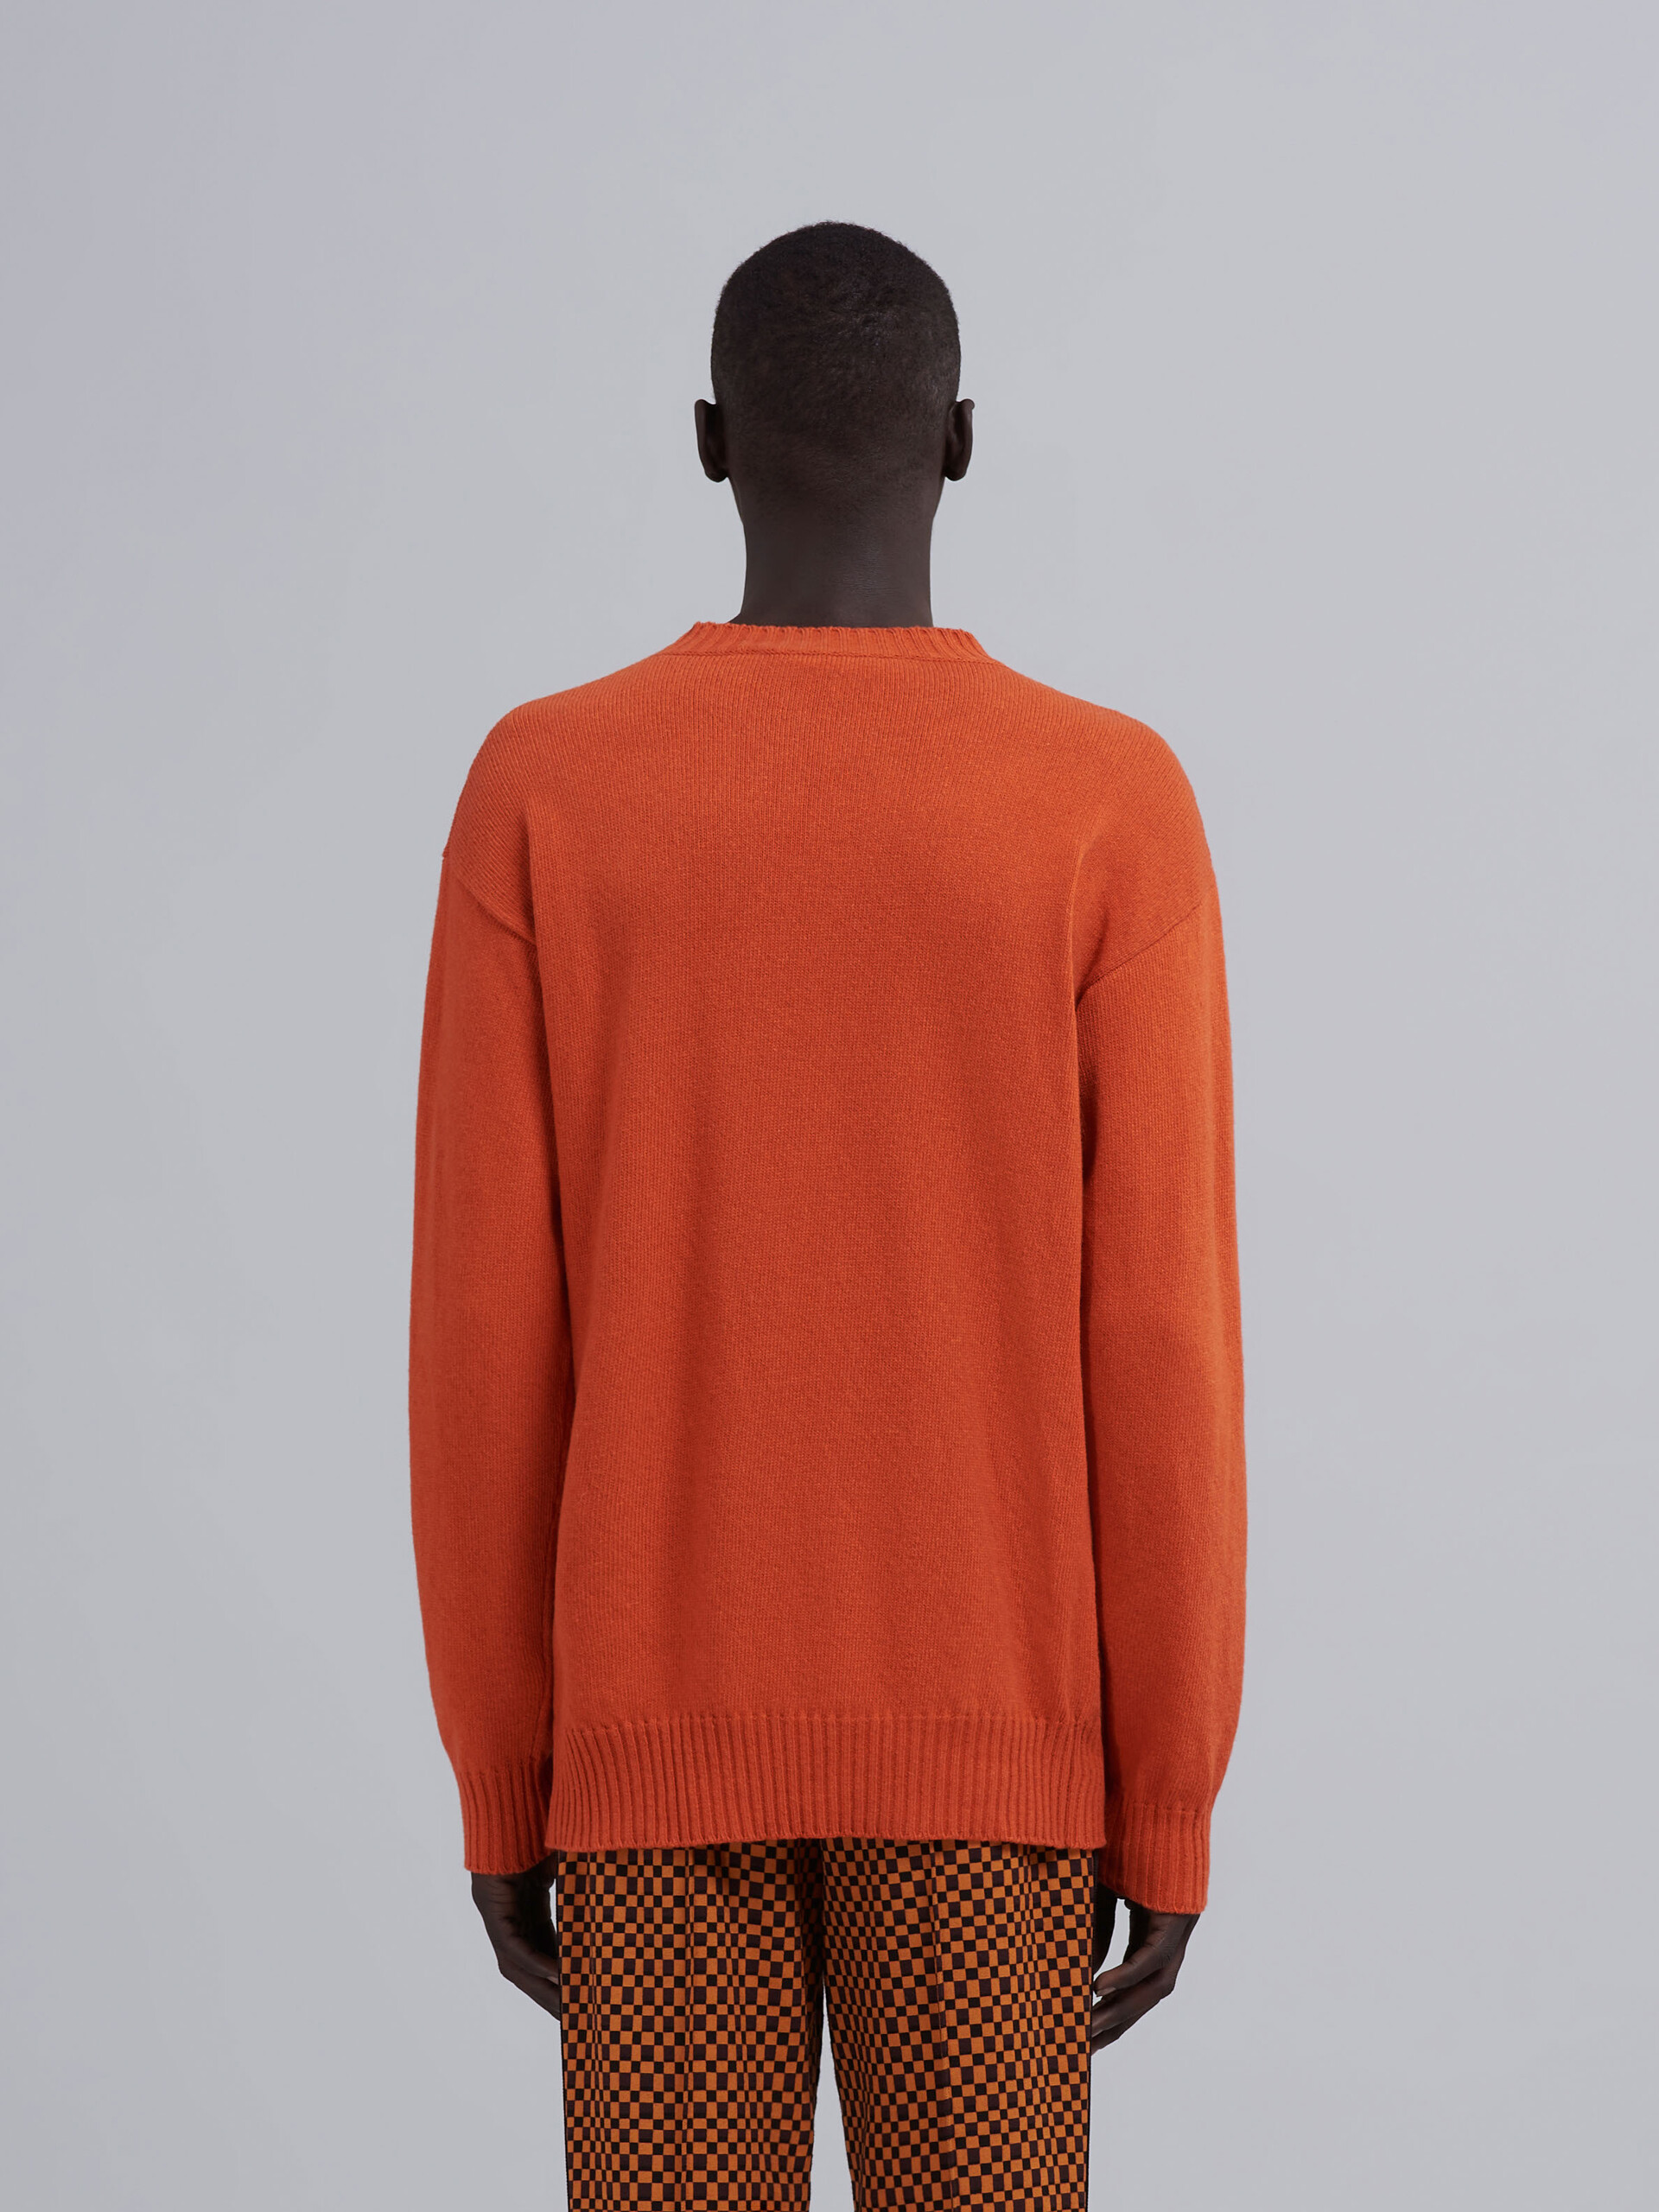 Maglia in cashmere arancio - Pullover - Image 3